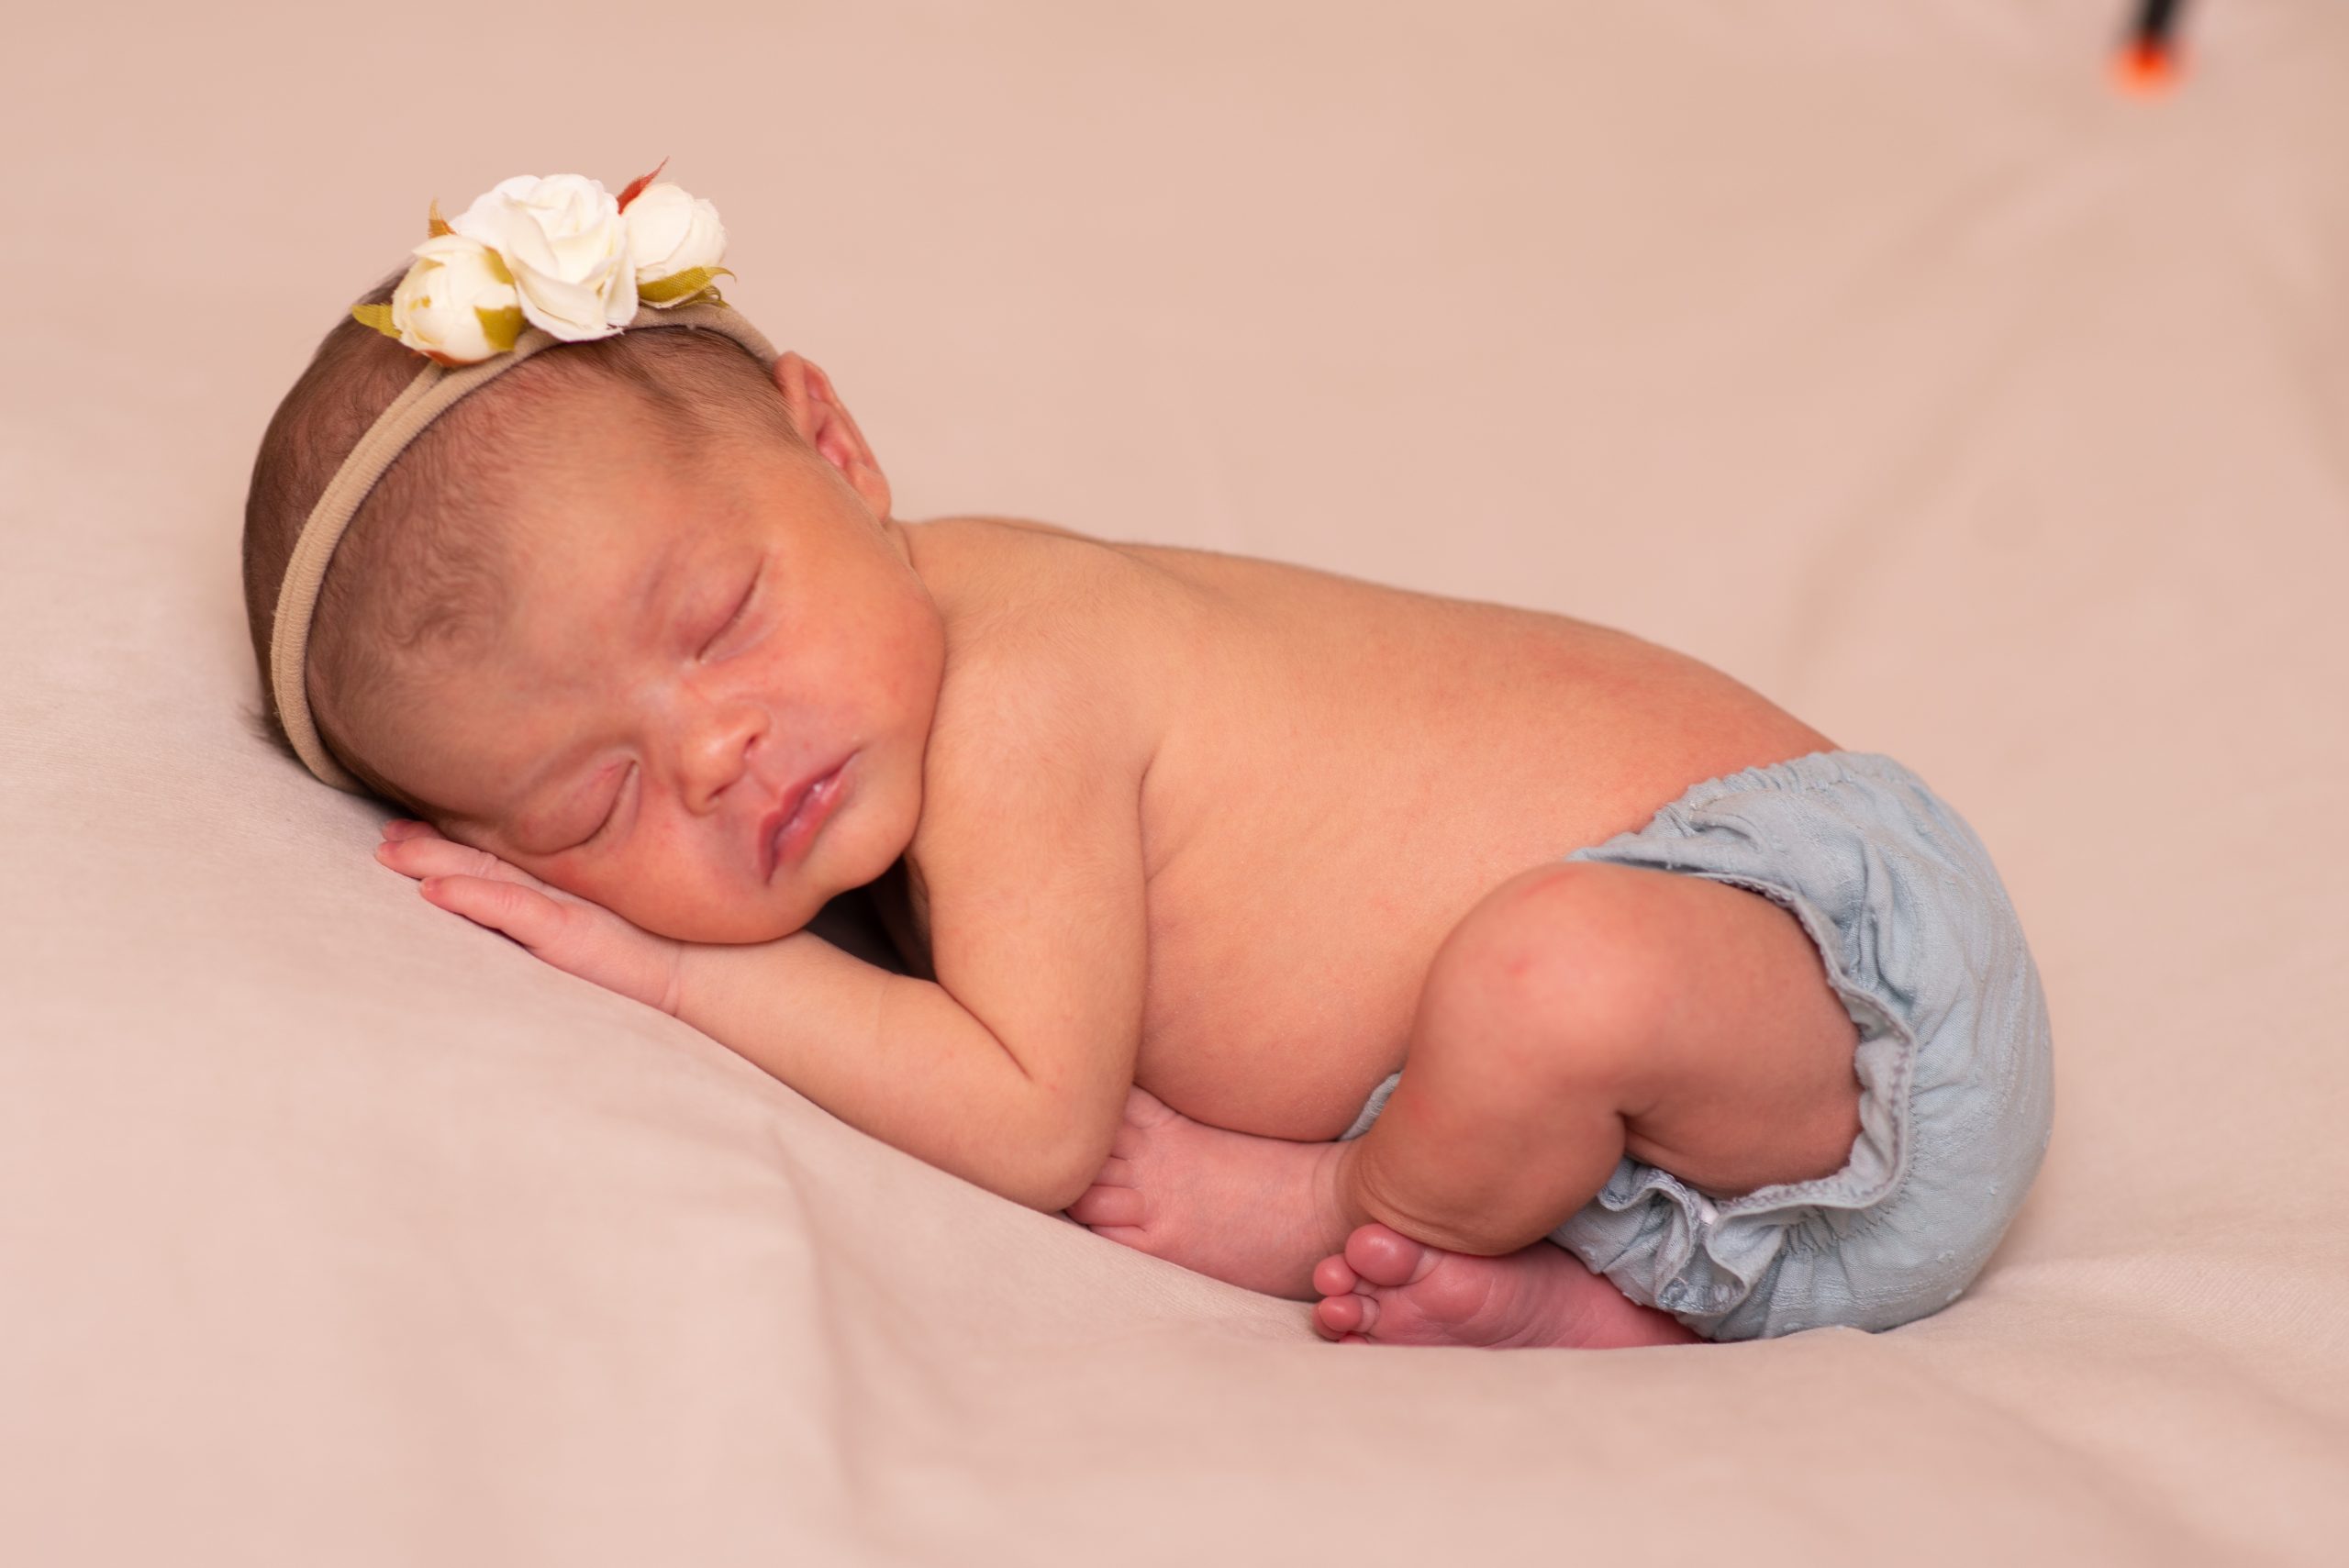 Mansión entre Apuesta Primera puesta para recién nacido: ropa indispensable para bebé